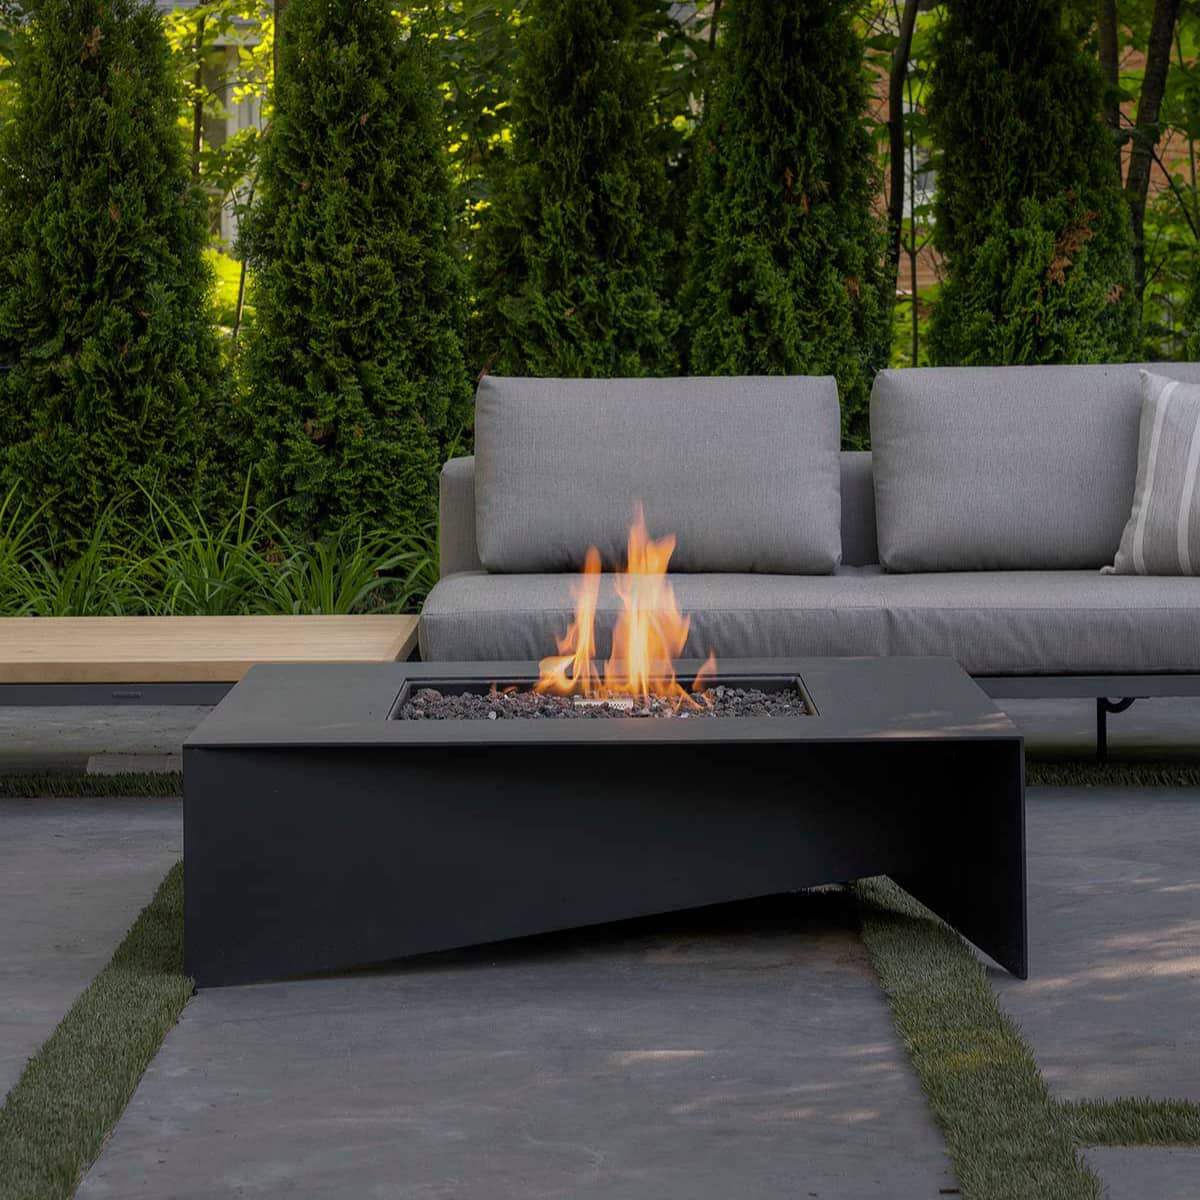 Aluminum Fire Pit Table - Paloform